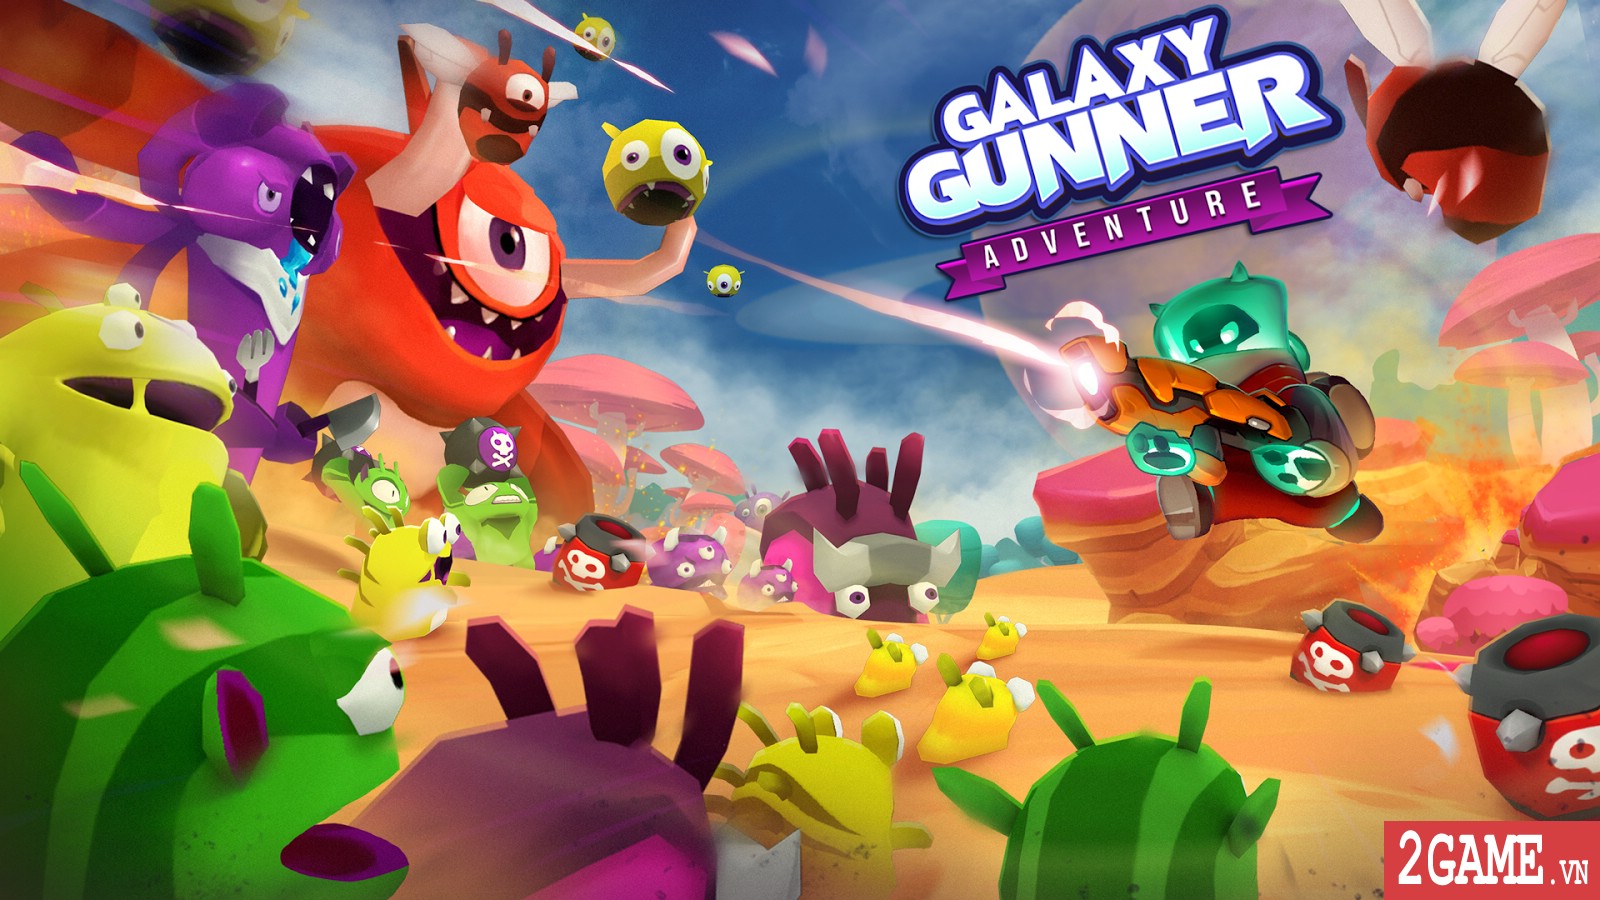 Galaxy gunner: Adventure – Game bắn quái ngoài hành tinh cực kỳ vui nhộn đến từ VNG 0